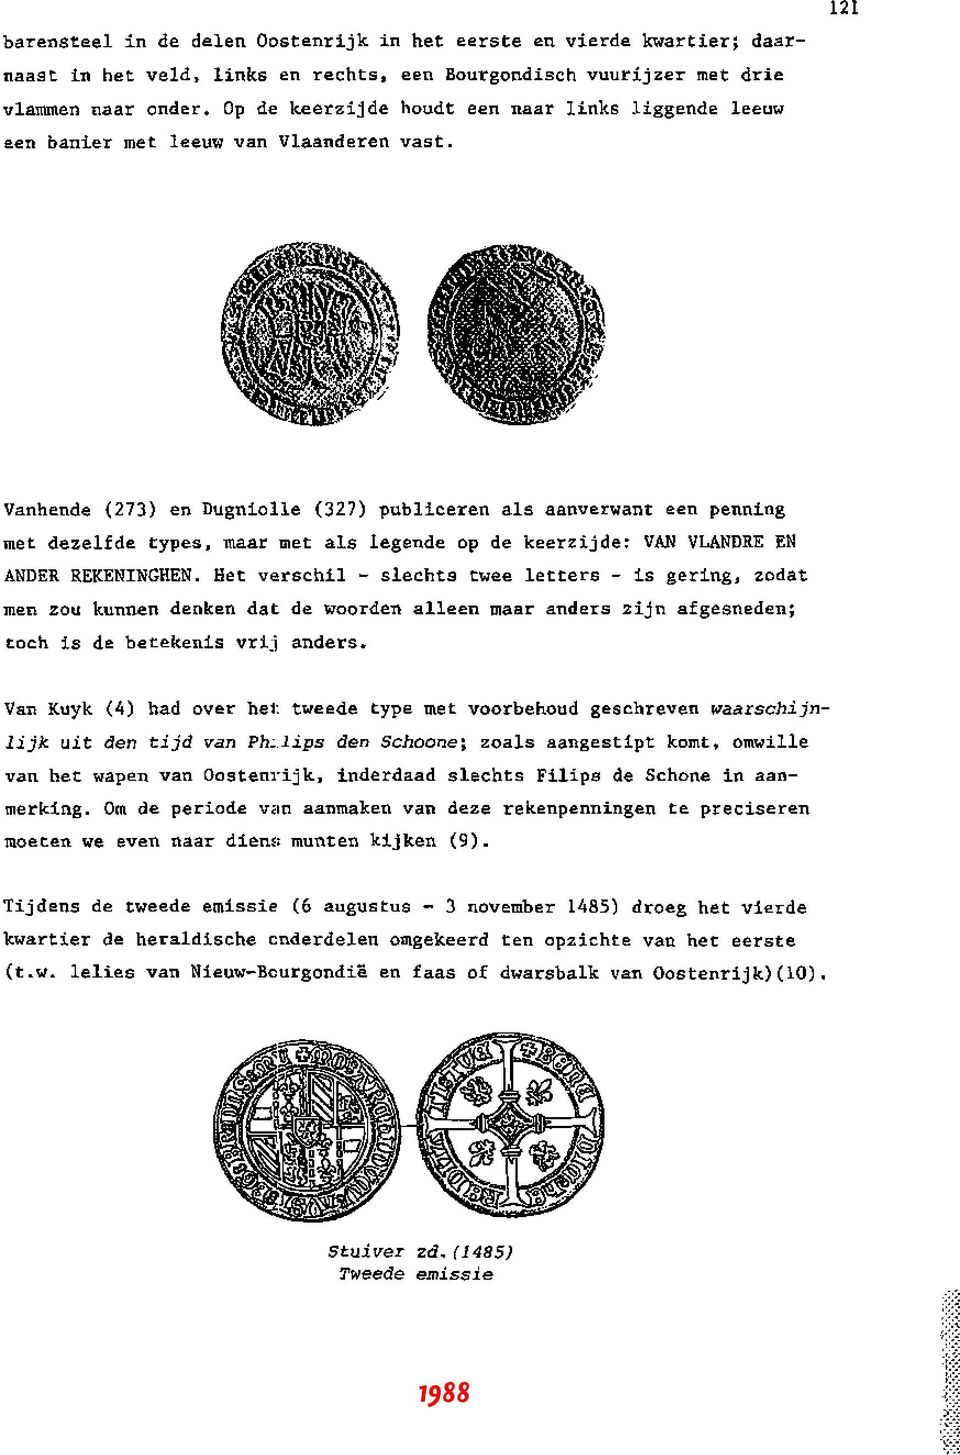 121 Vanhende (273) en Dugniolle (327) publiceren ais aanverwant een penning met dezelfde types, maar met ais legende op de keerzijde: VAN VLANDRE EN ANDER REKENINGHEN.